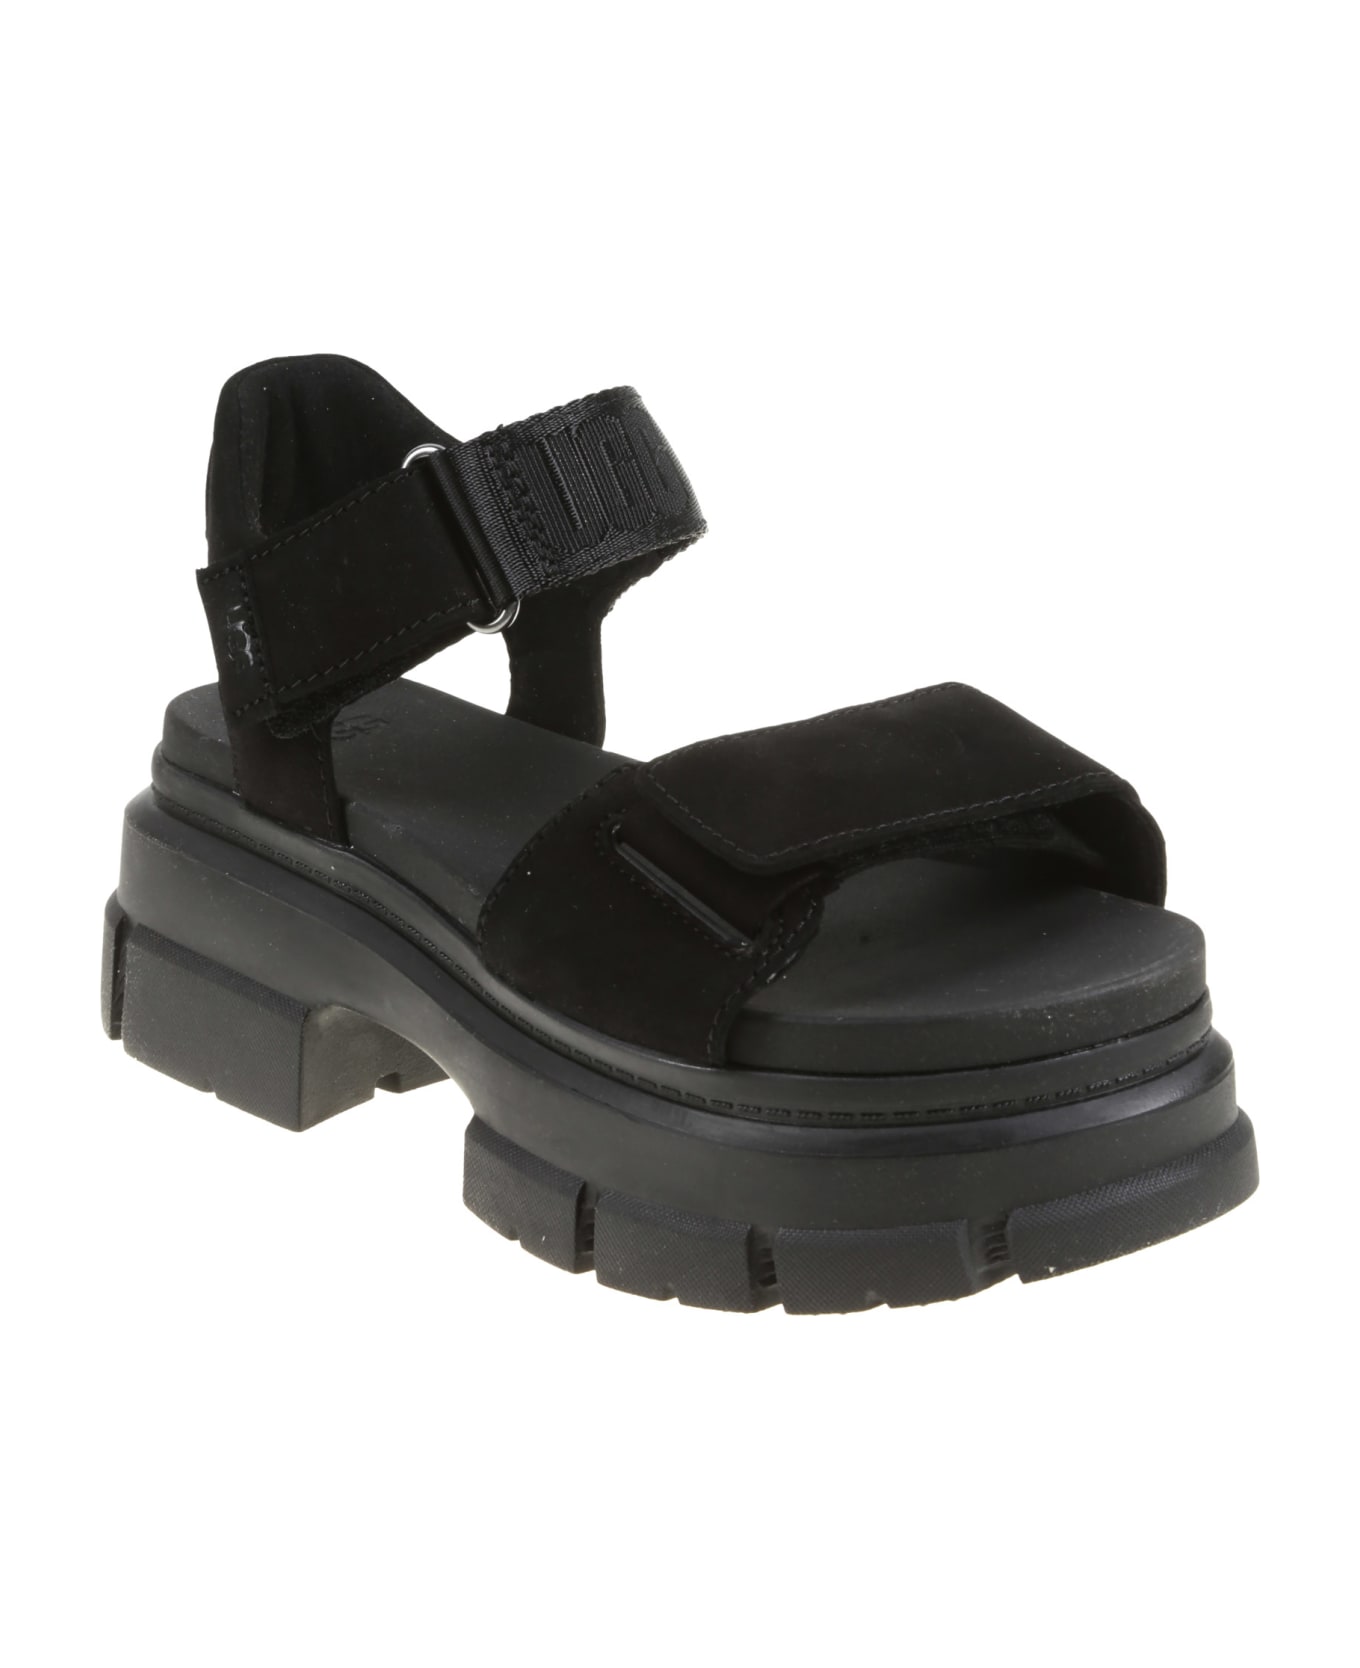 UGG Ashton Ankle Sandal - Black